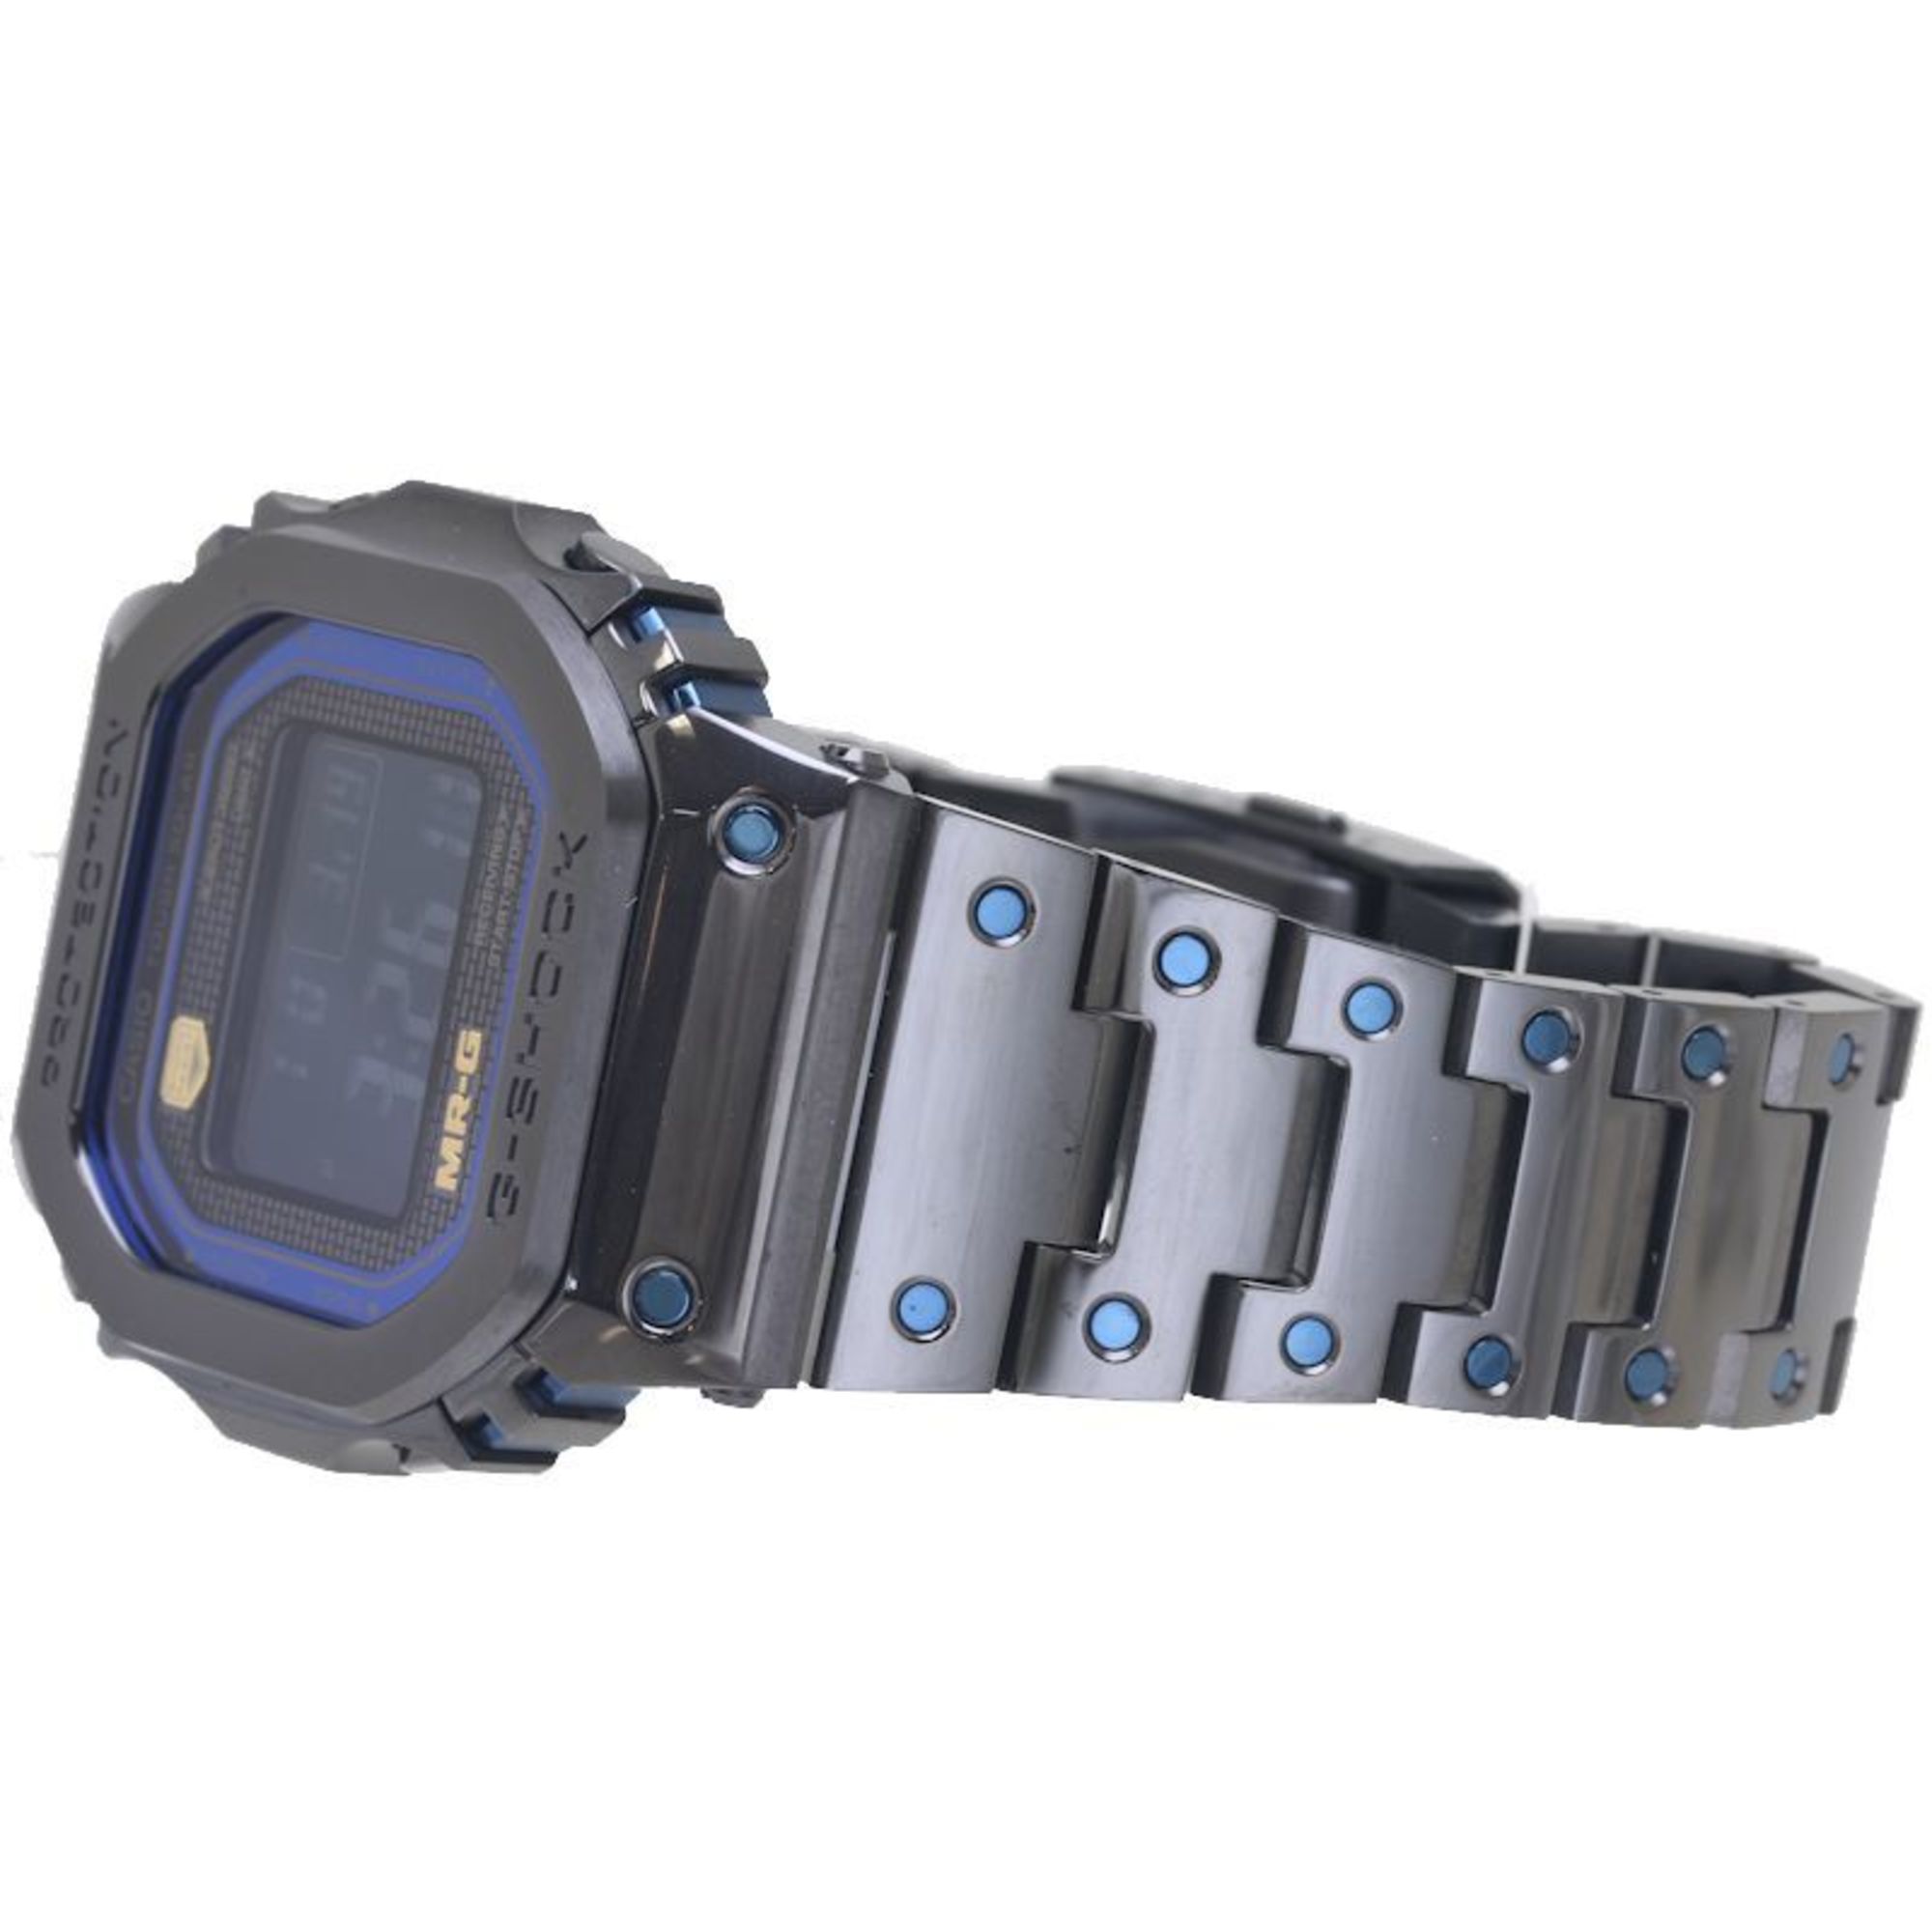 CASIO G-Shock MR-G MRG-B5000BA-1JR Titanium Men's 39376 Watch